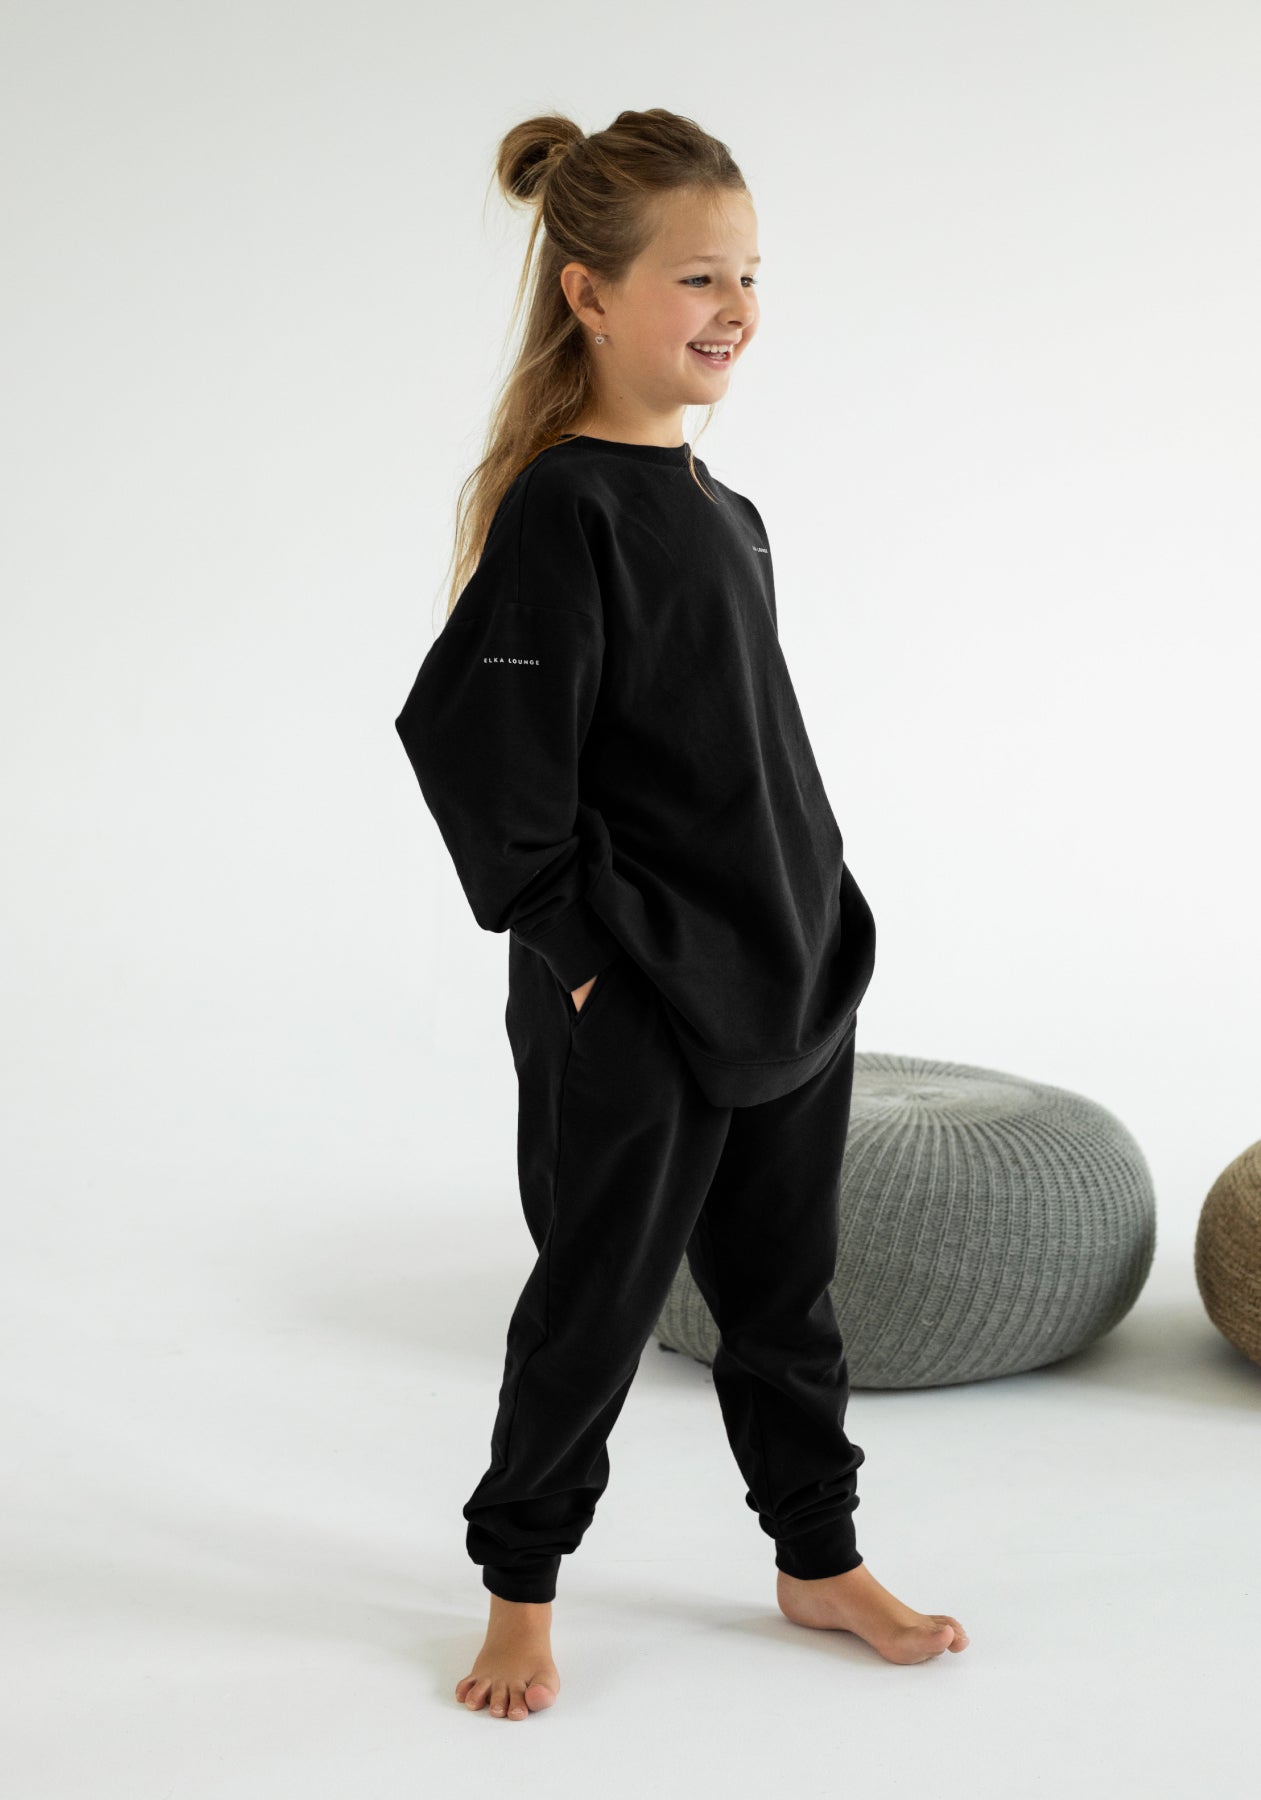 Children's bluza bawełna organiczna Black - Oversized